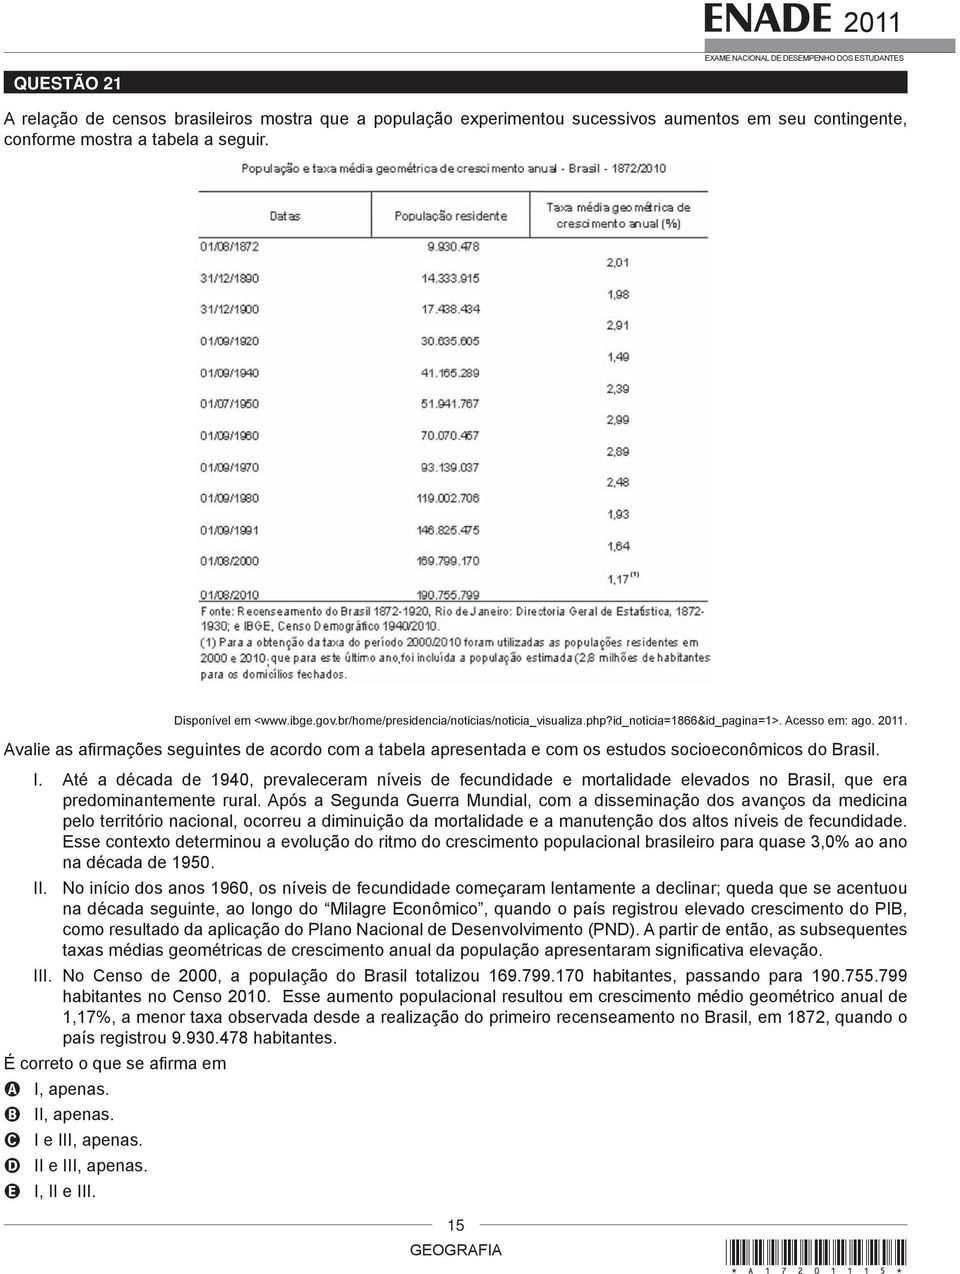 Avalie as afi rmações seguintes de acordo com a tabela apresentada e com os estudos socioeconômicos do Brasil. I.